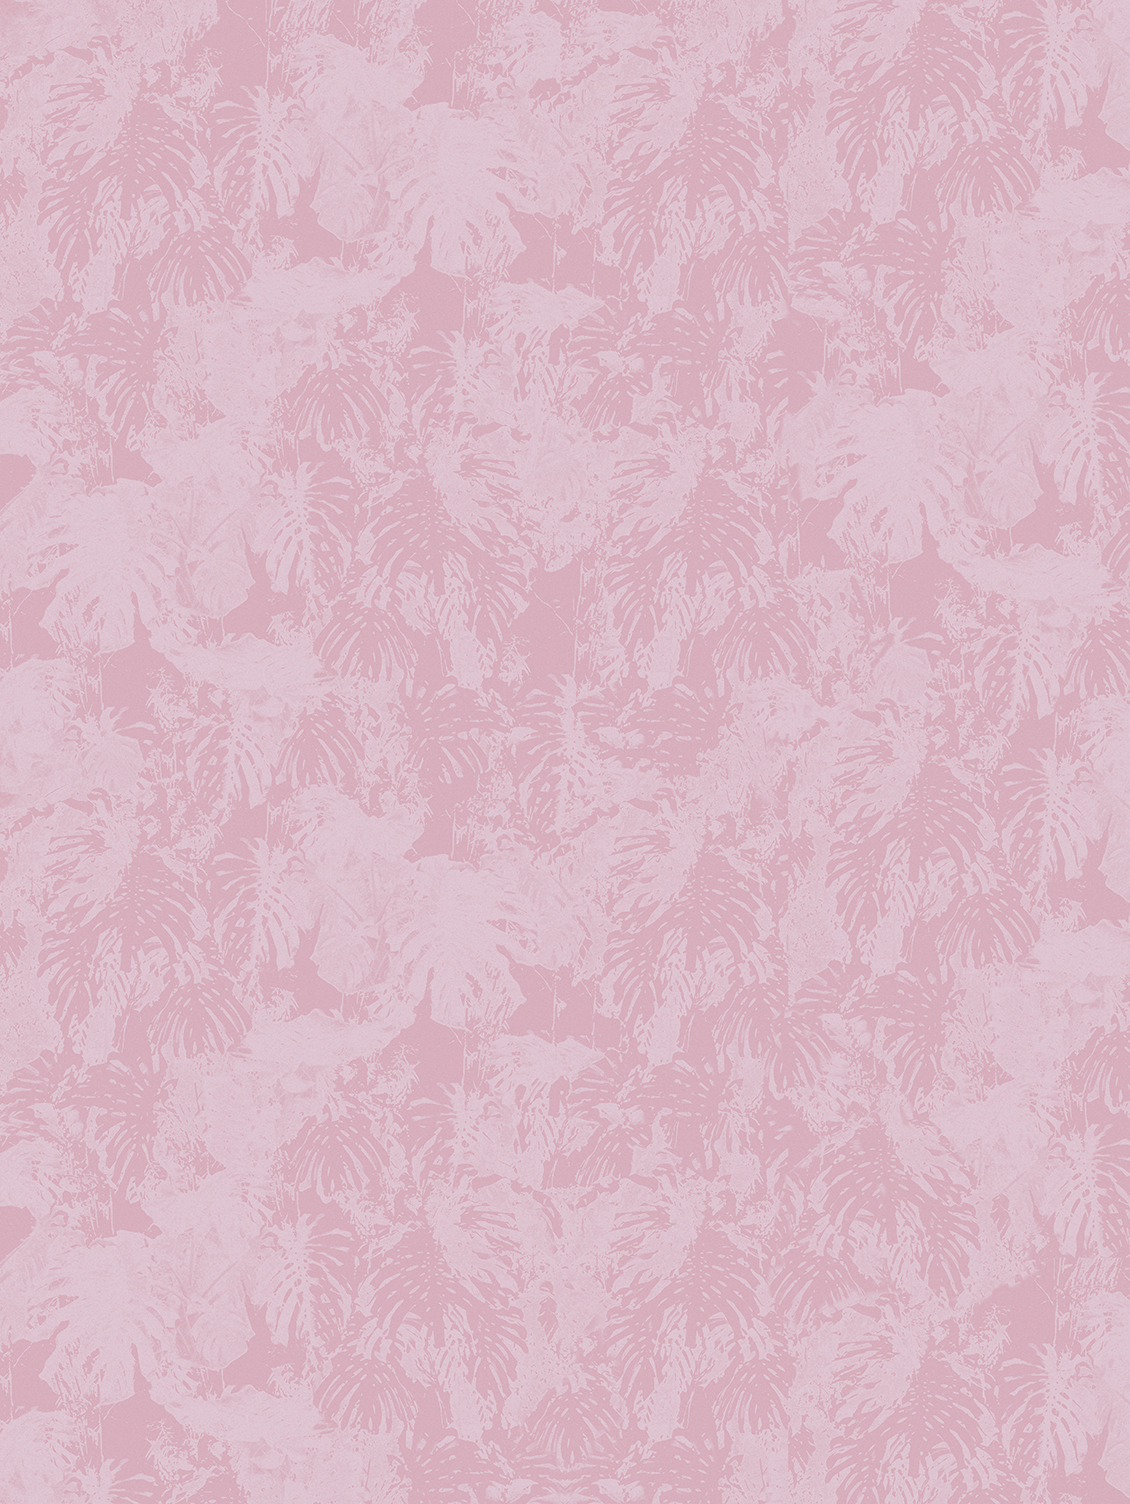 Carta da parati sui toni del rosa con texture di foglie tropicali, effetto tessuto